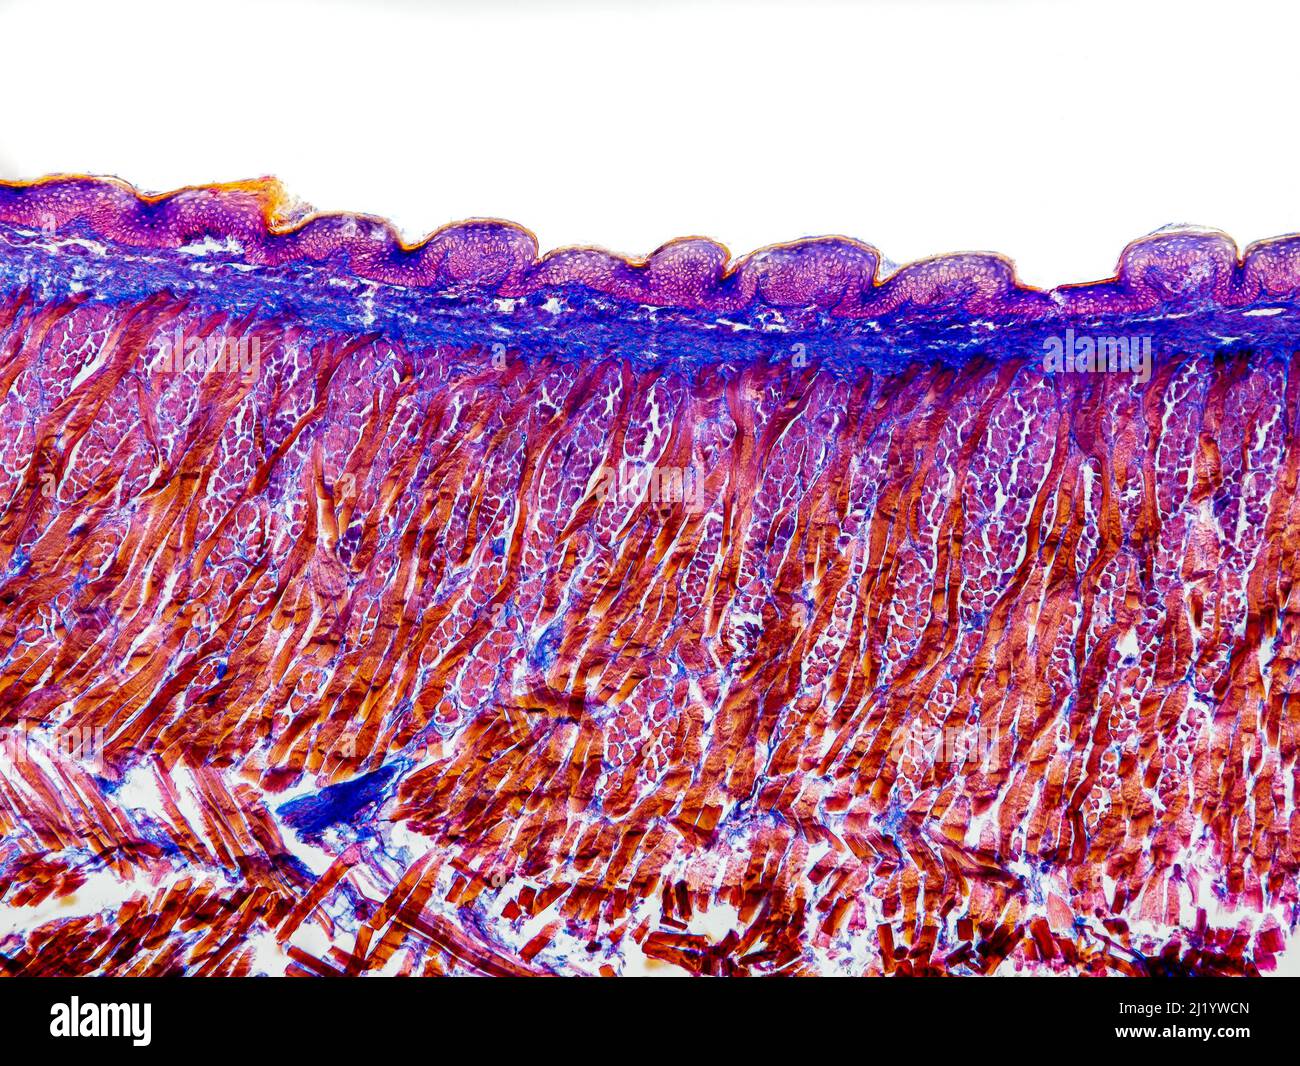 Katzenzungenquerschnitt unter dem Mikroskop mit Blattapapillen,  Geschmacksnerven, Submucosa und Muskel - optisches Mikroskop mit  x100-facher Vergrößerung Stockfotografie - Alamy